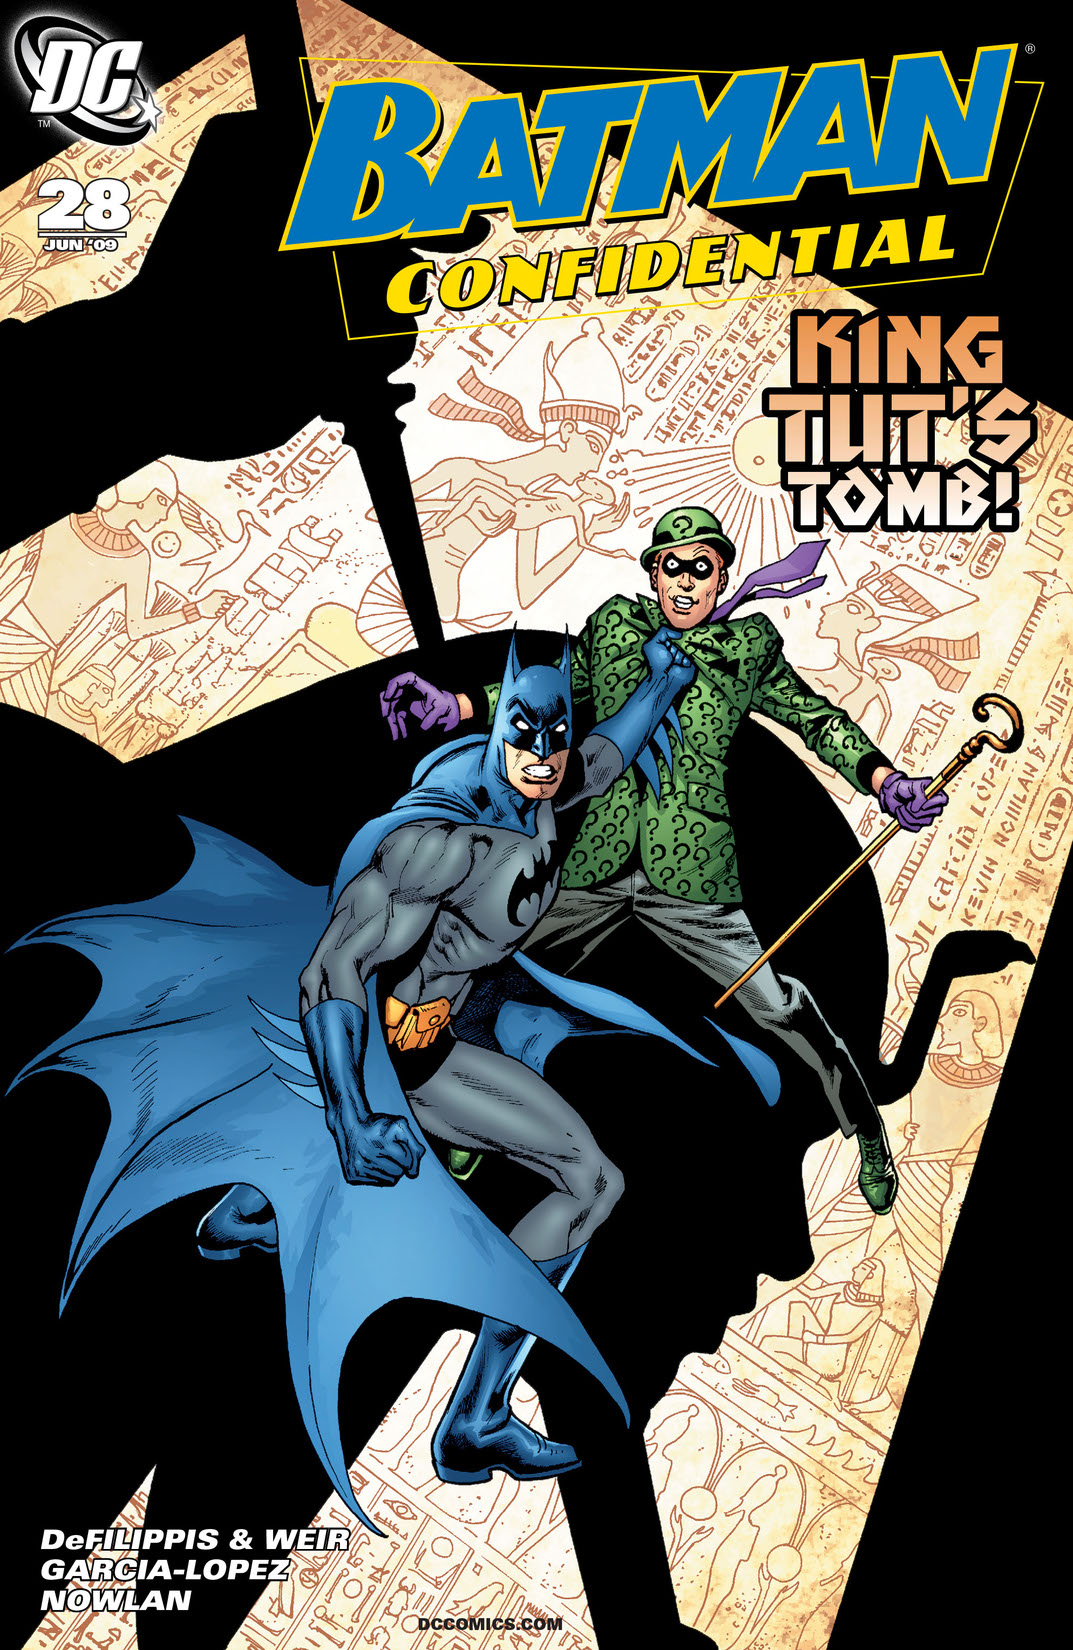 Batman Confidential #28 preview images